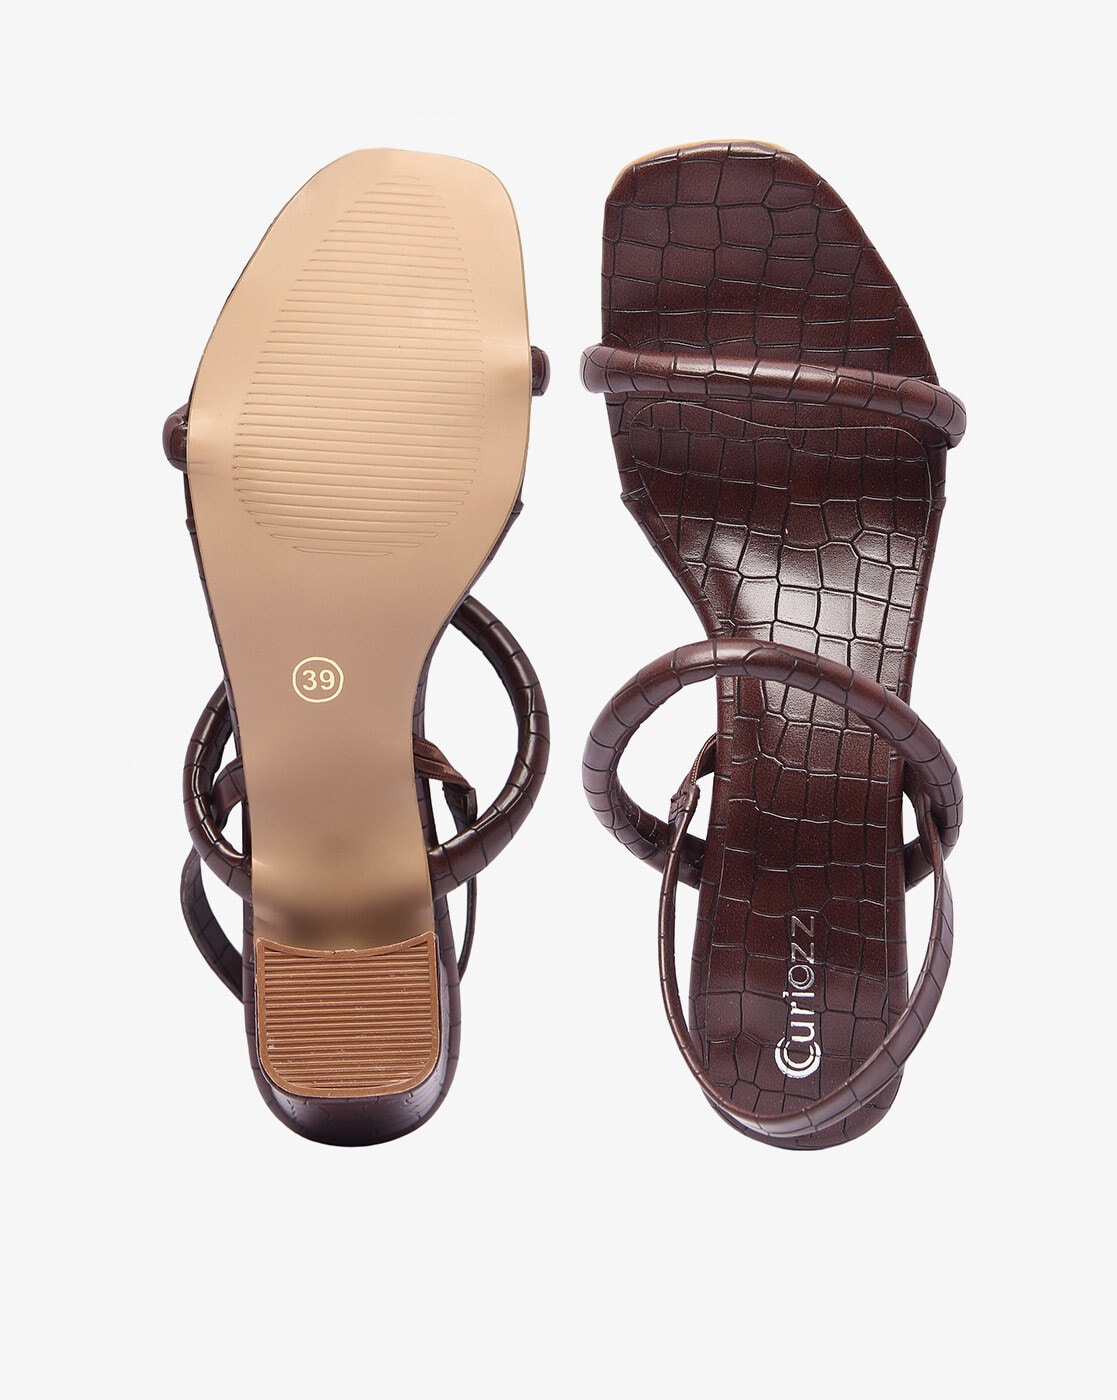 Women's Croc Sandals Size 8 New | Women, Sandals, Crocs